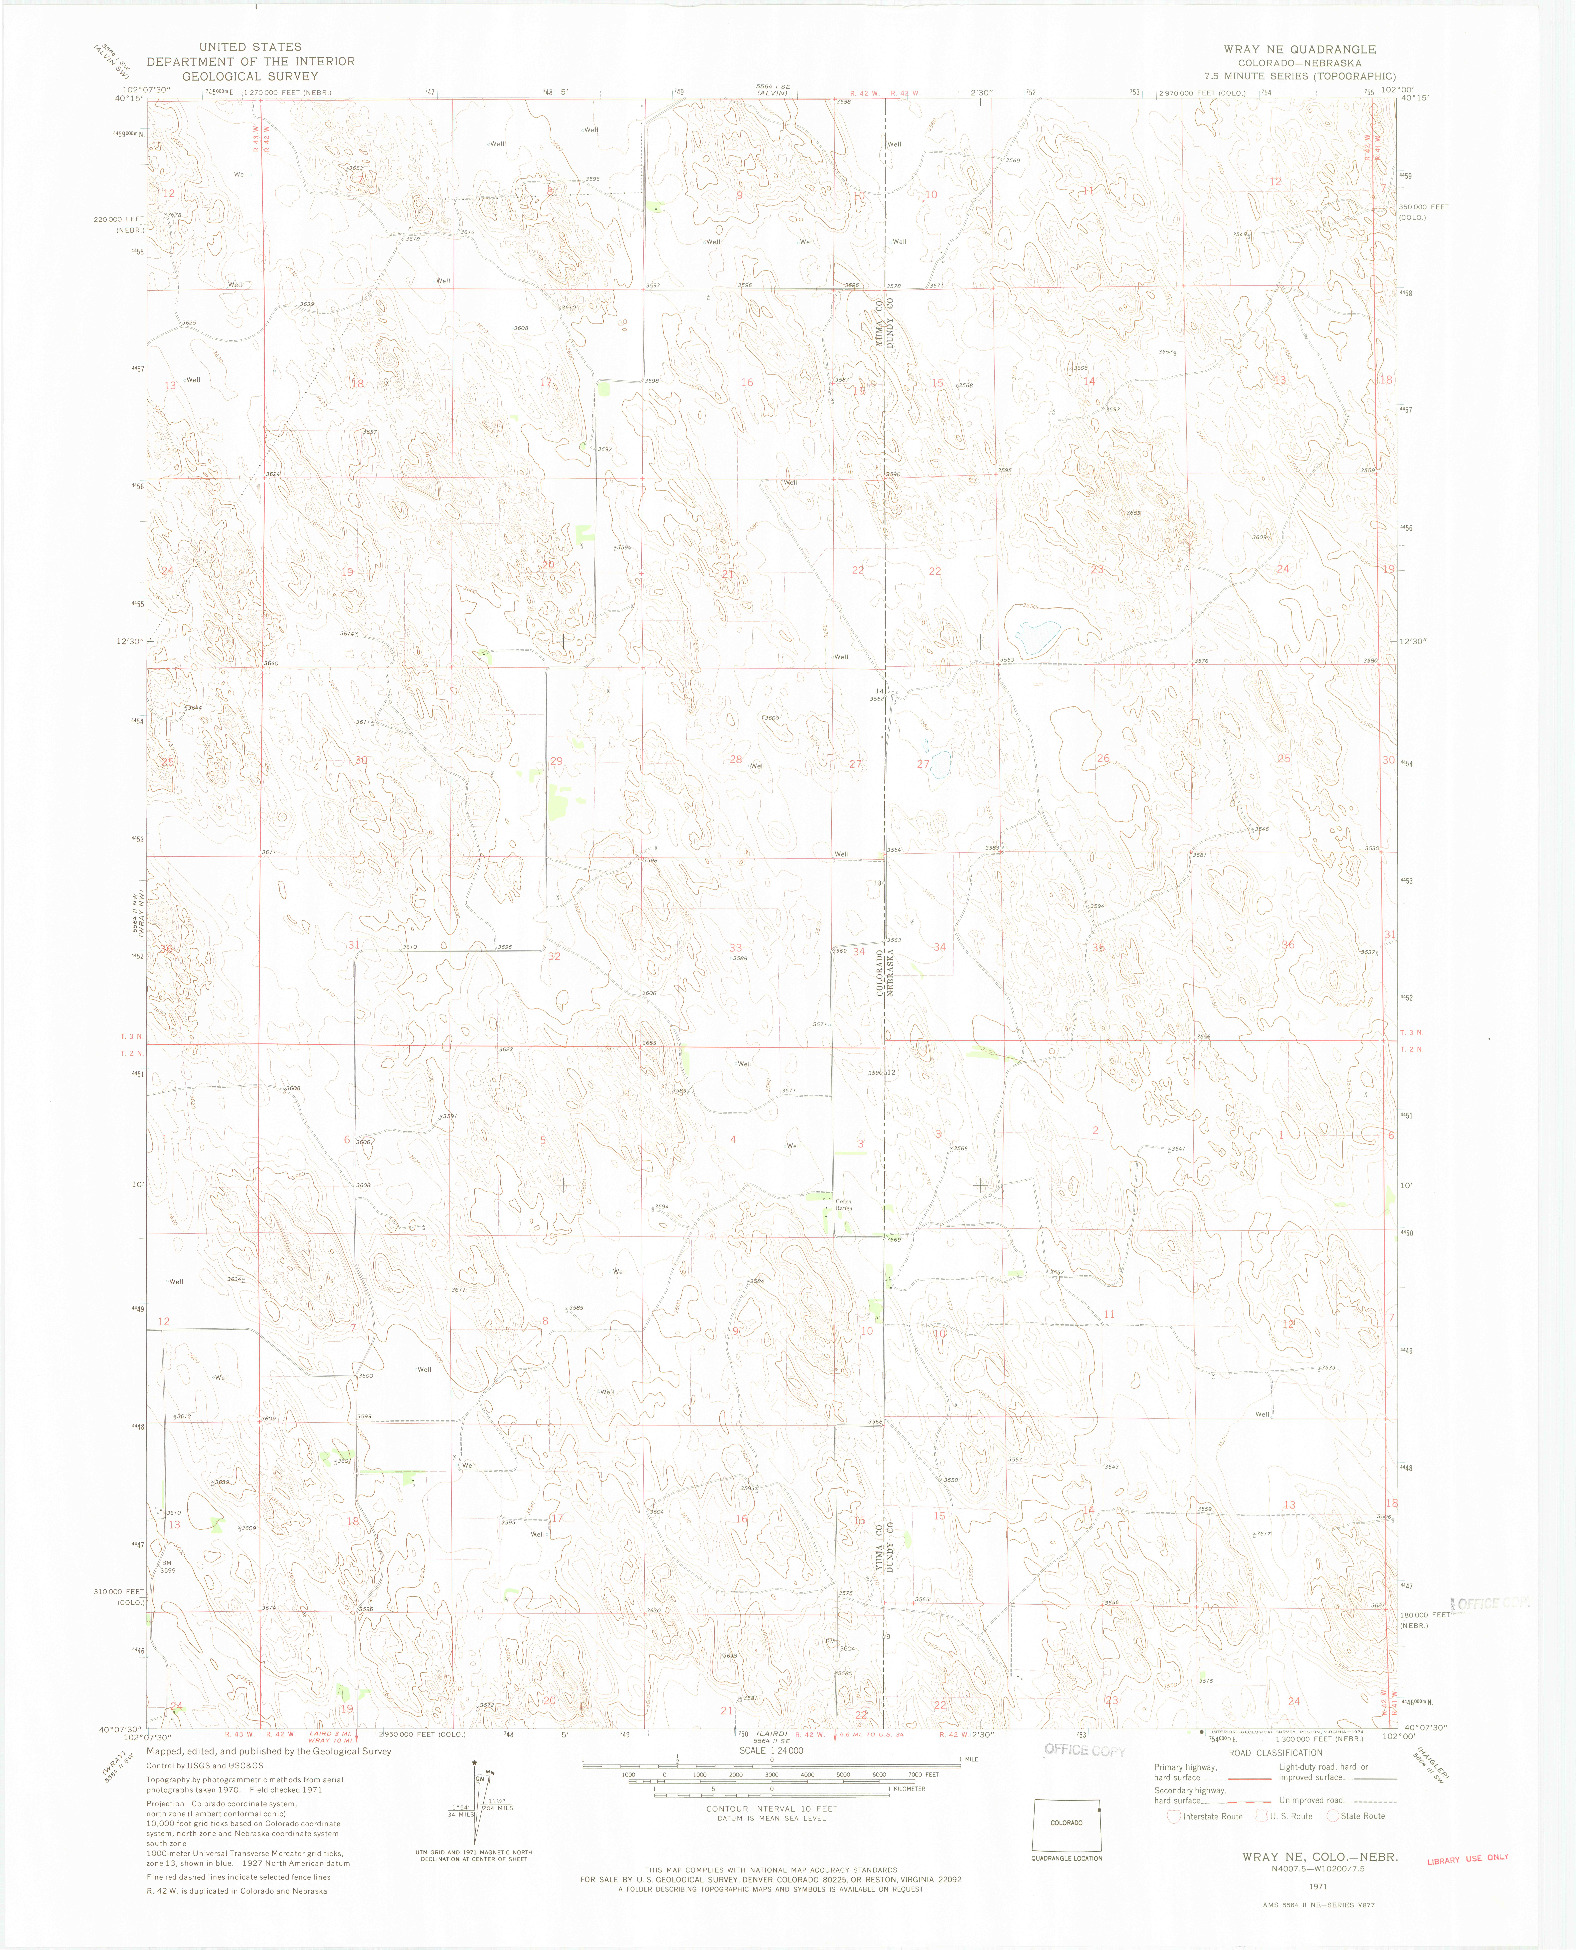 USGS 1:24000-SCALE QUADRANGLE FOR WRAY NE, CO 1971